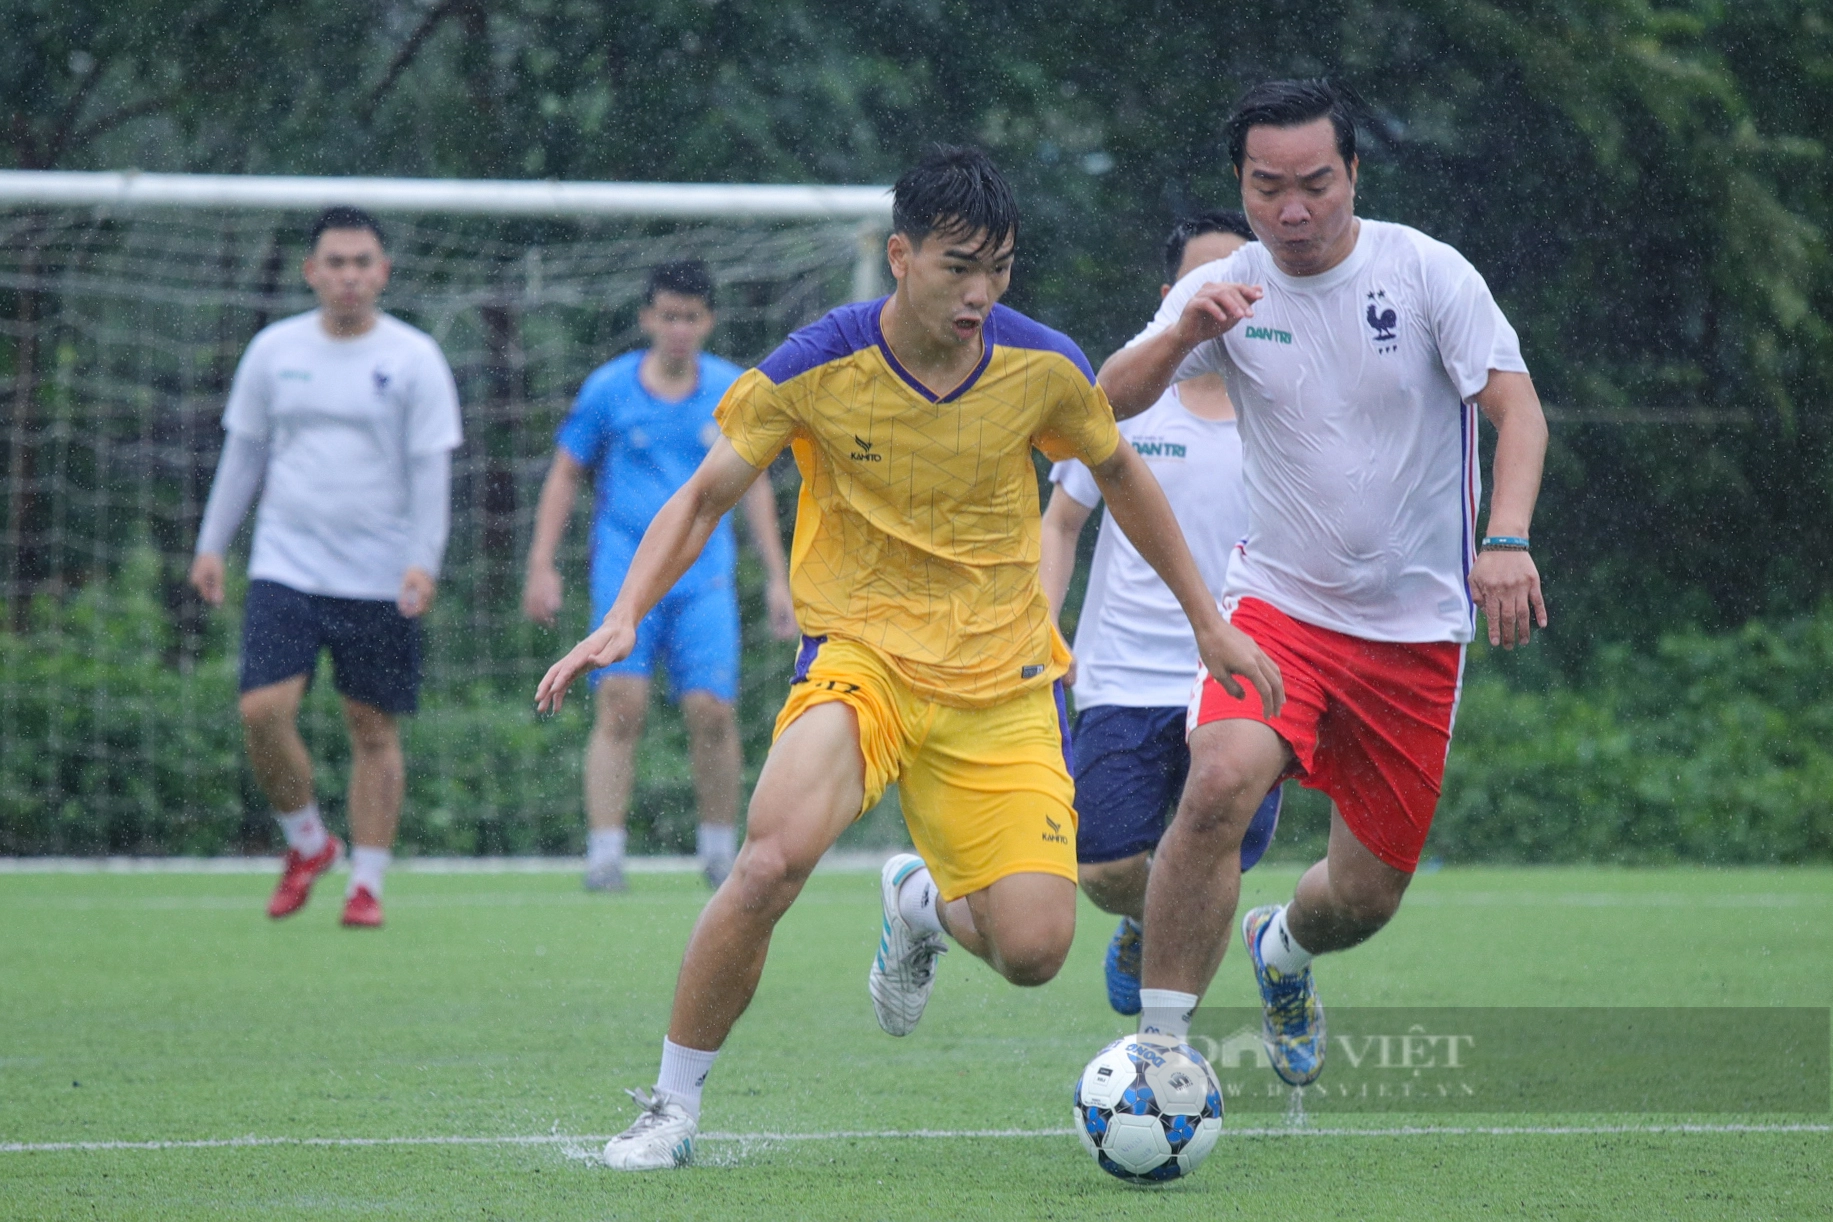 Loạt ảnh buổi thi đấu đầu tiên của giải bóng đá Báo NTNN/Dân Việt - tranh cúp mùa Thu lần thứ 14 - Ảnh 2.